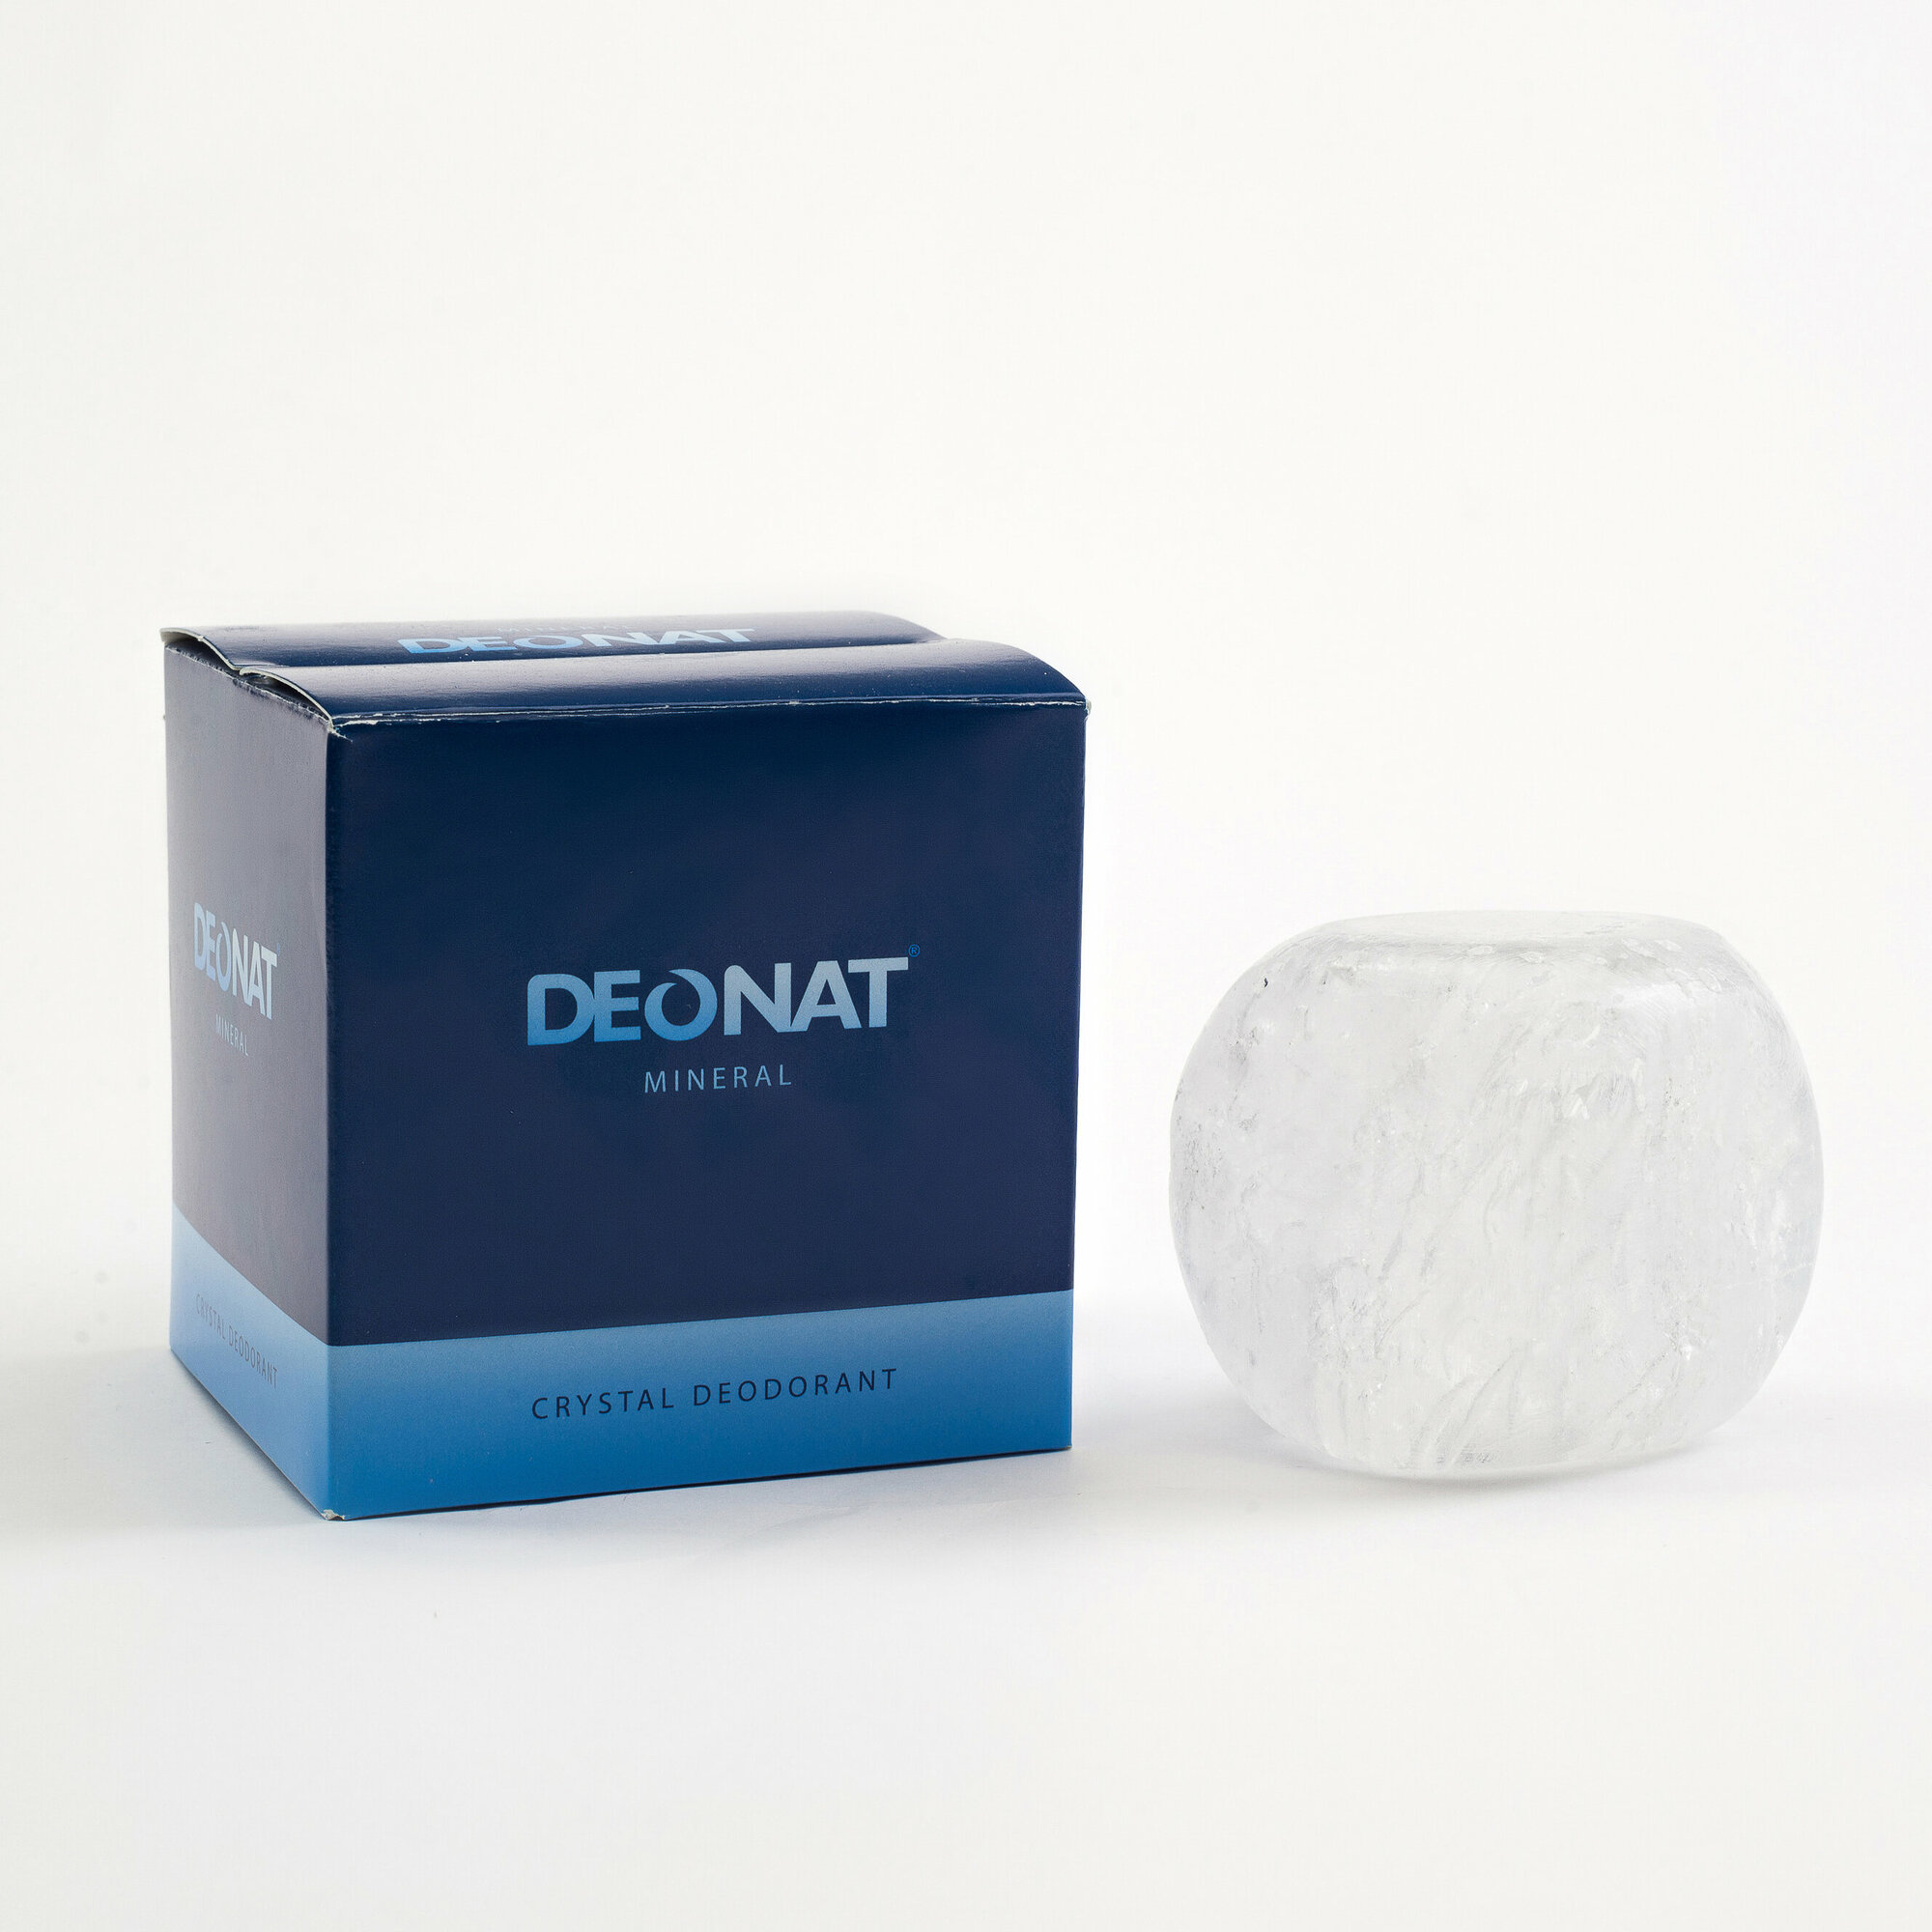 Кристалл ДеоНат, 140 гр, цельный, природной формы в подарочной коробочке.